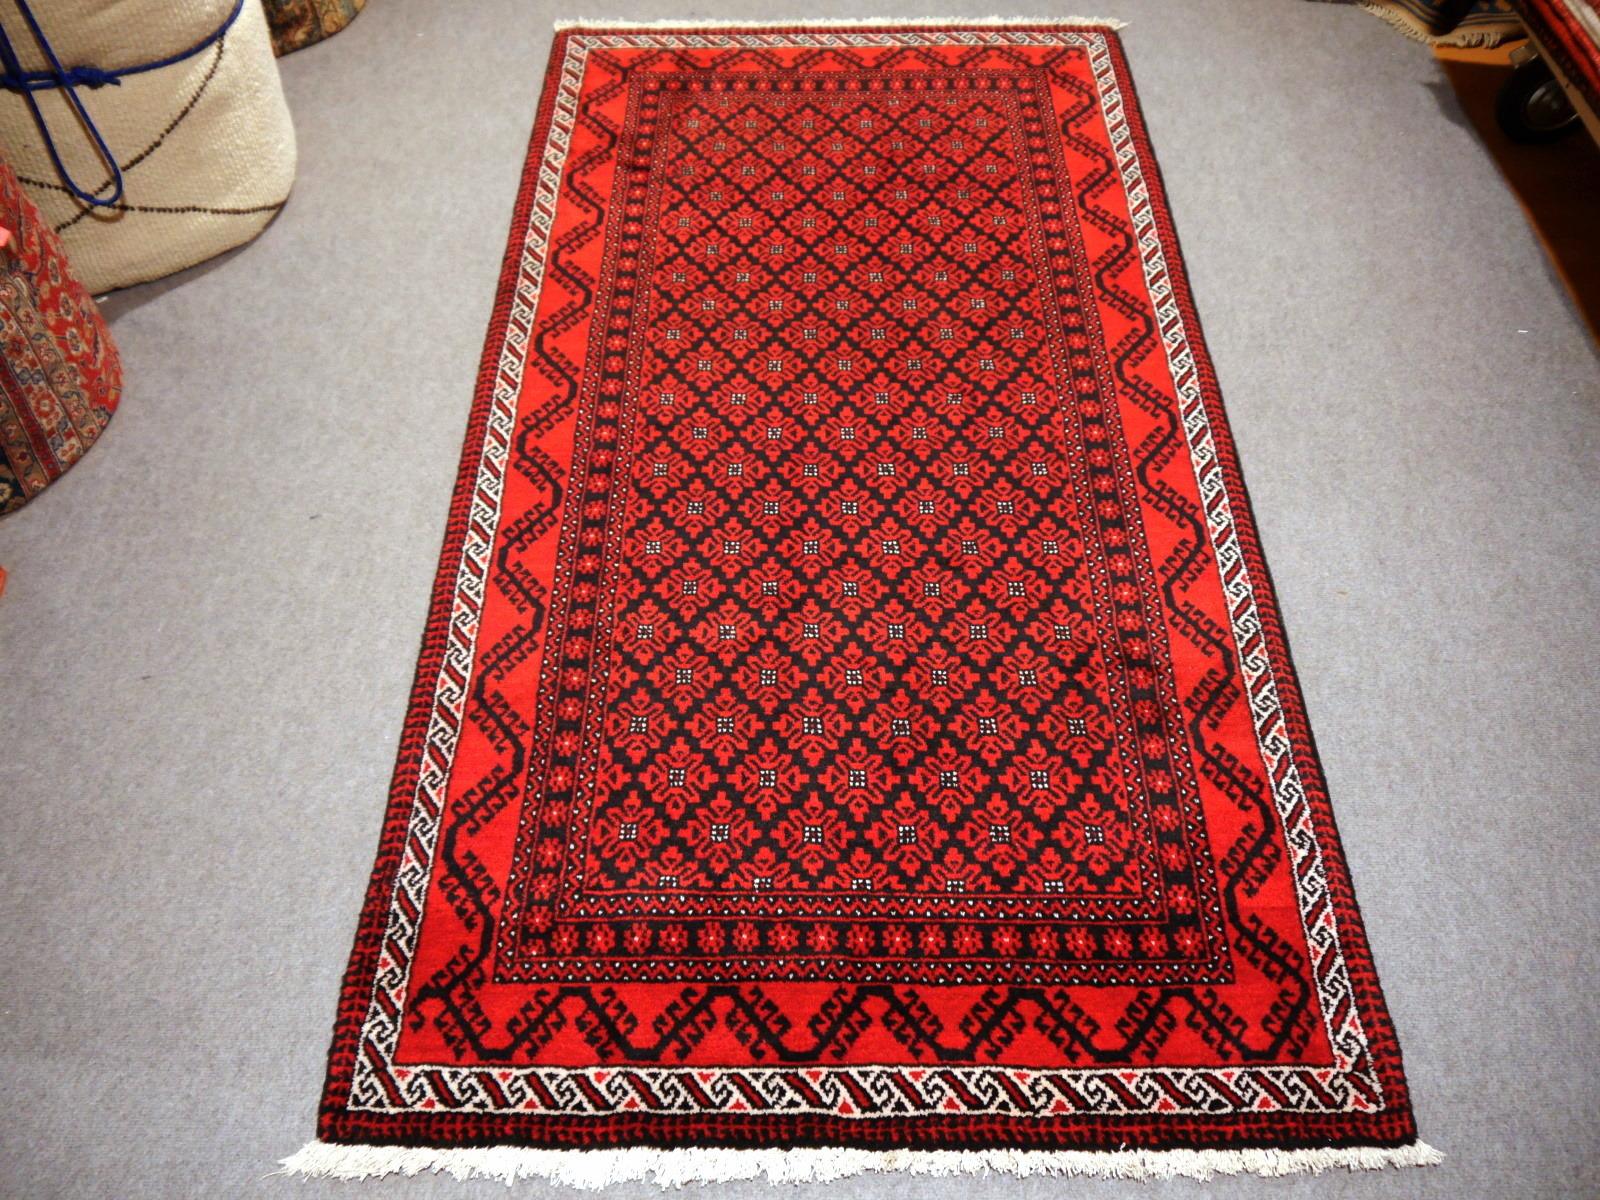 Vintage-Stammesteppich in Schwarz, Rot und Elfenbein.

Die Turkmenen oder Turkomanen siedeln in Dörfern in Afghanistan und Turkmenistan nahe der persischen Grenze. Ihr Ursprung ist das Nomadenvolk, aber die meisten Mitglieder der Stämme haben sich